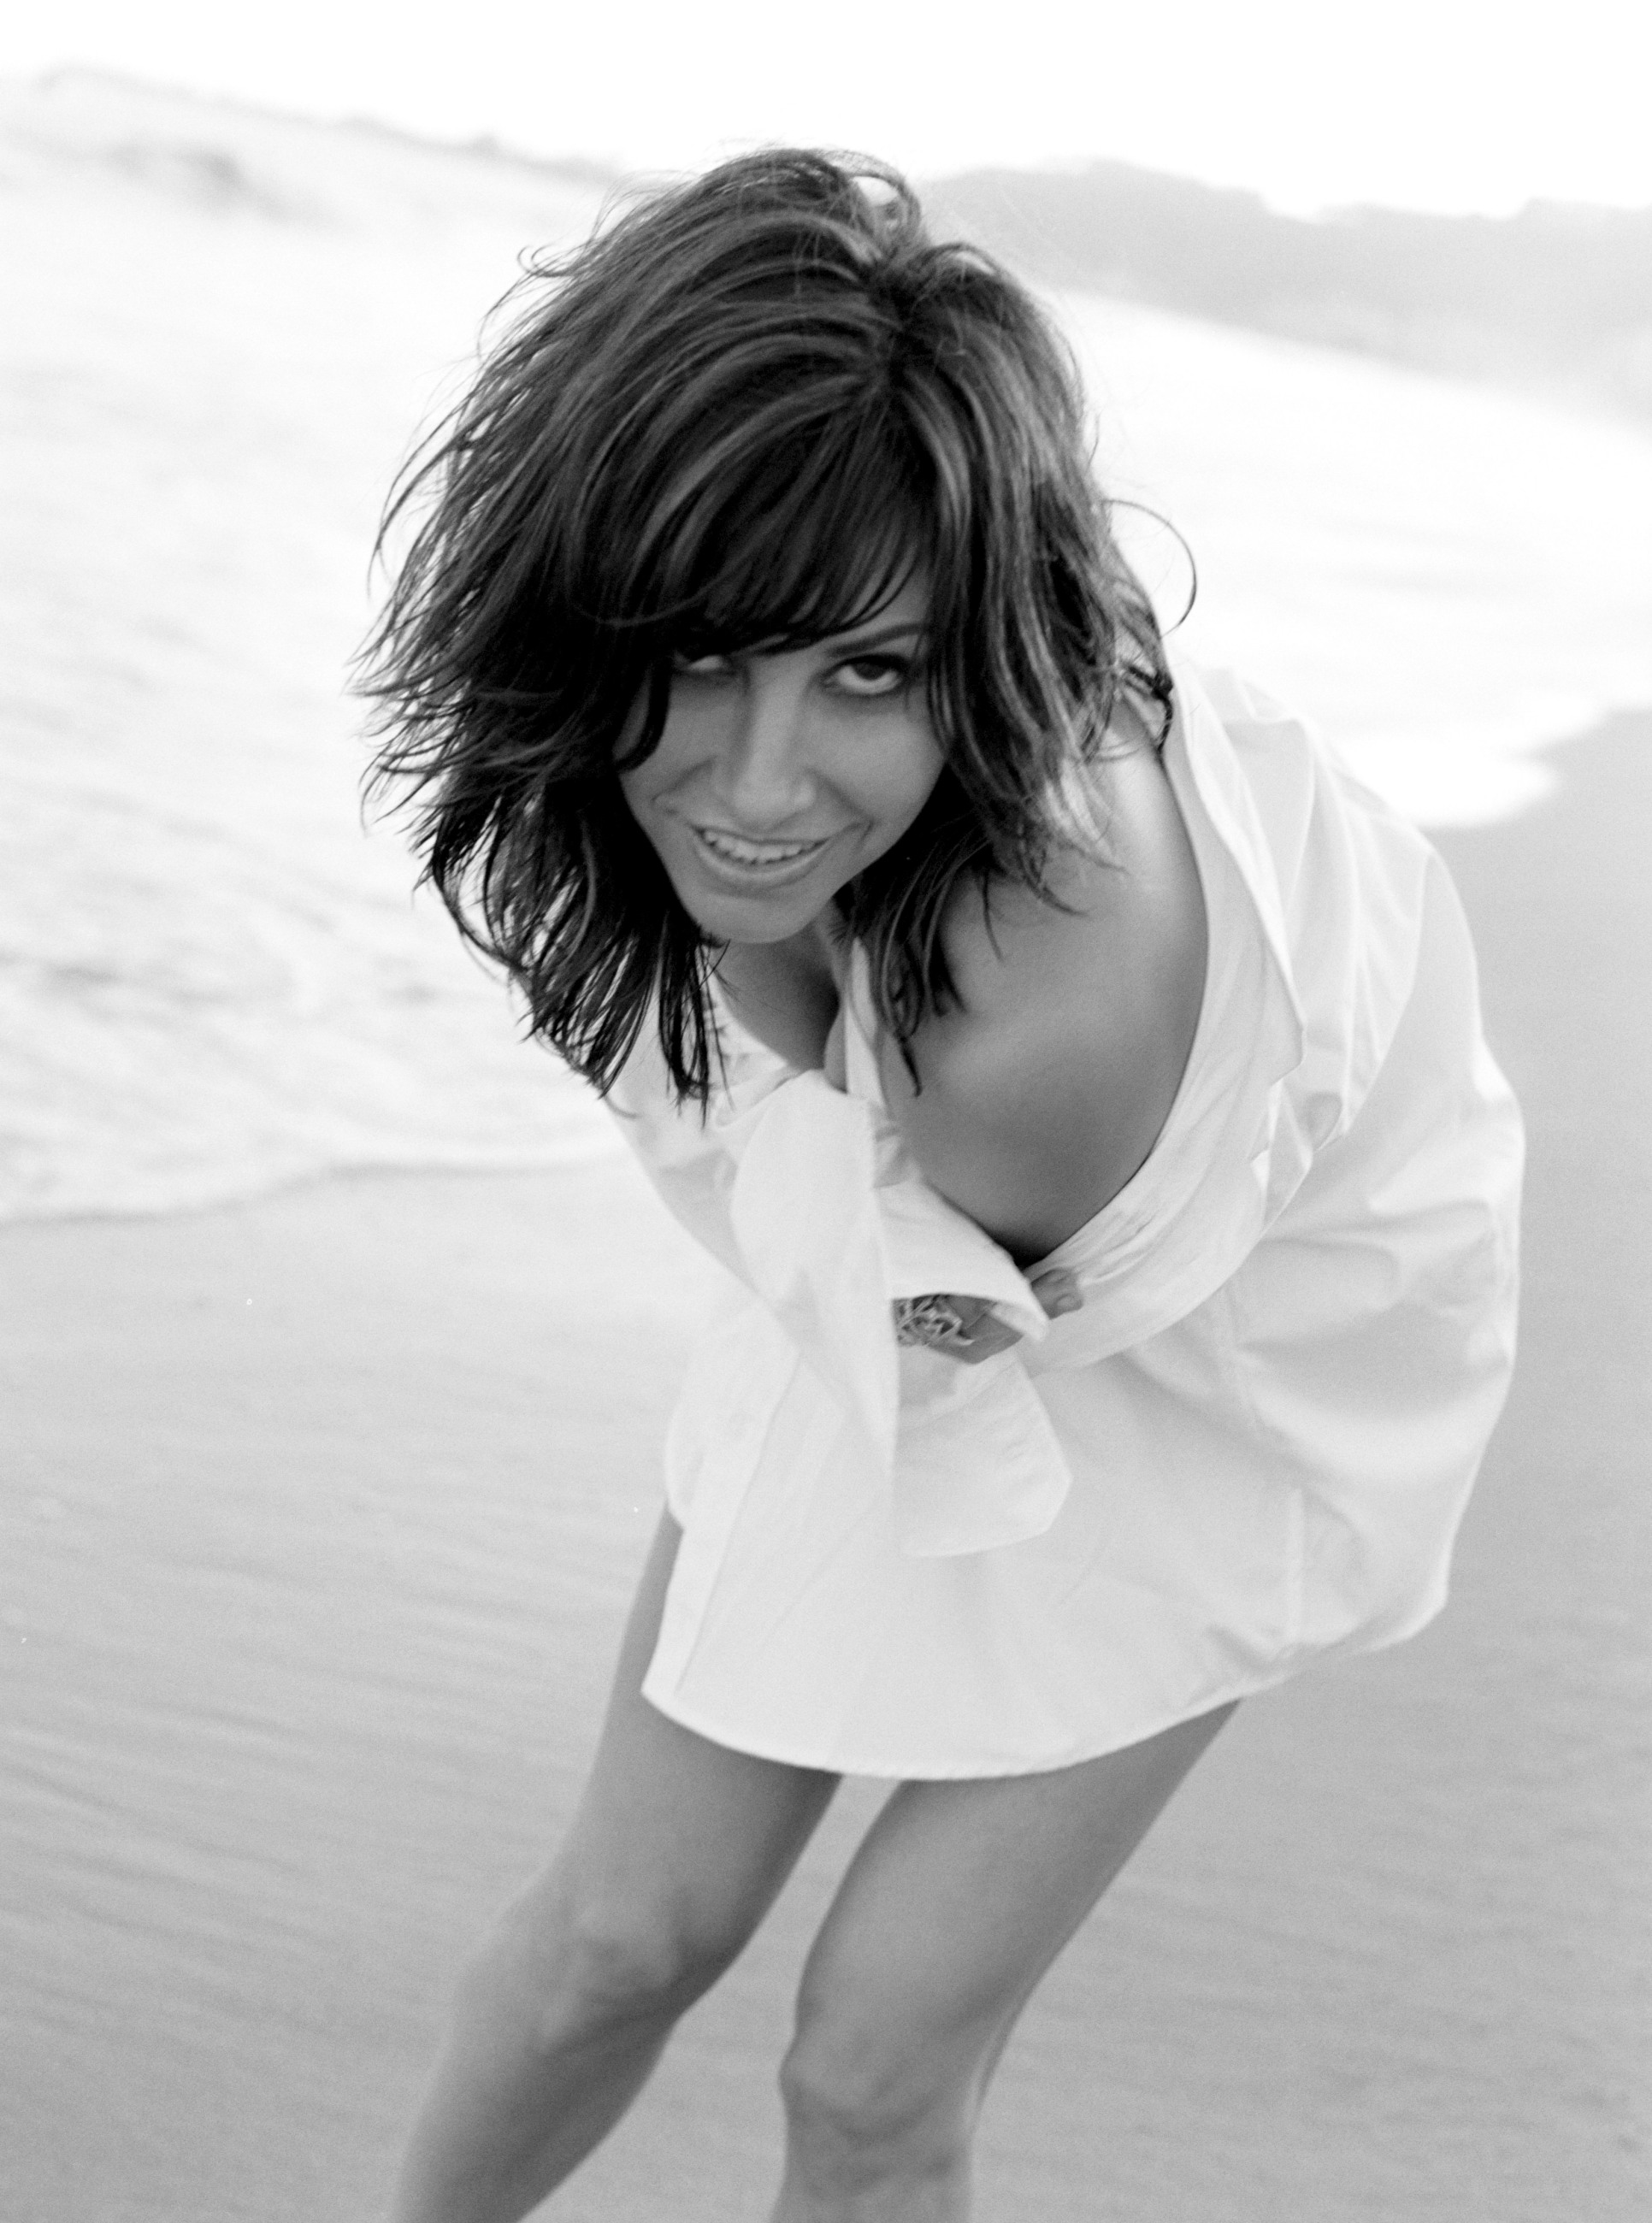 Gina Gershon Sexy Dans Un Photoshoot En Noir Et Blanc 5 Mars 2011 